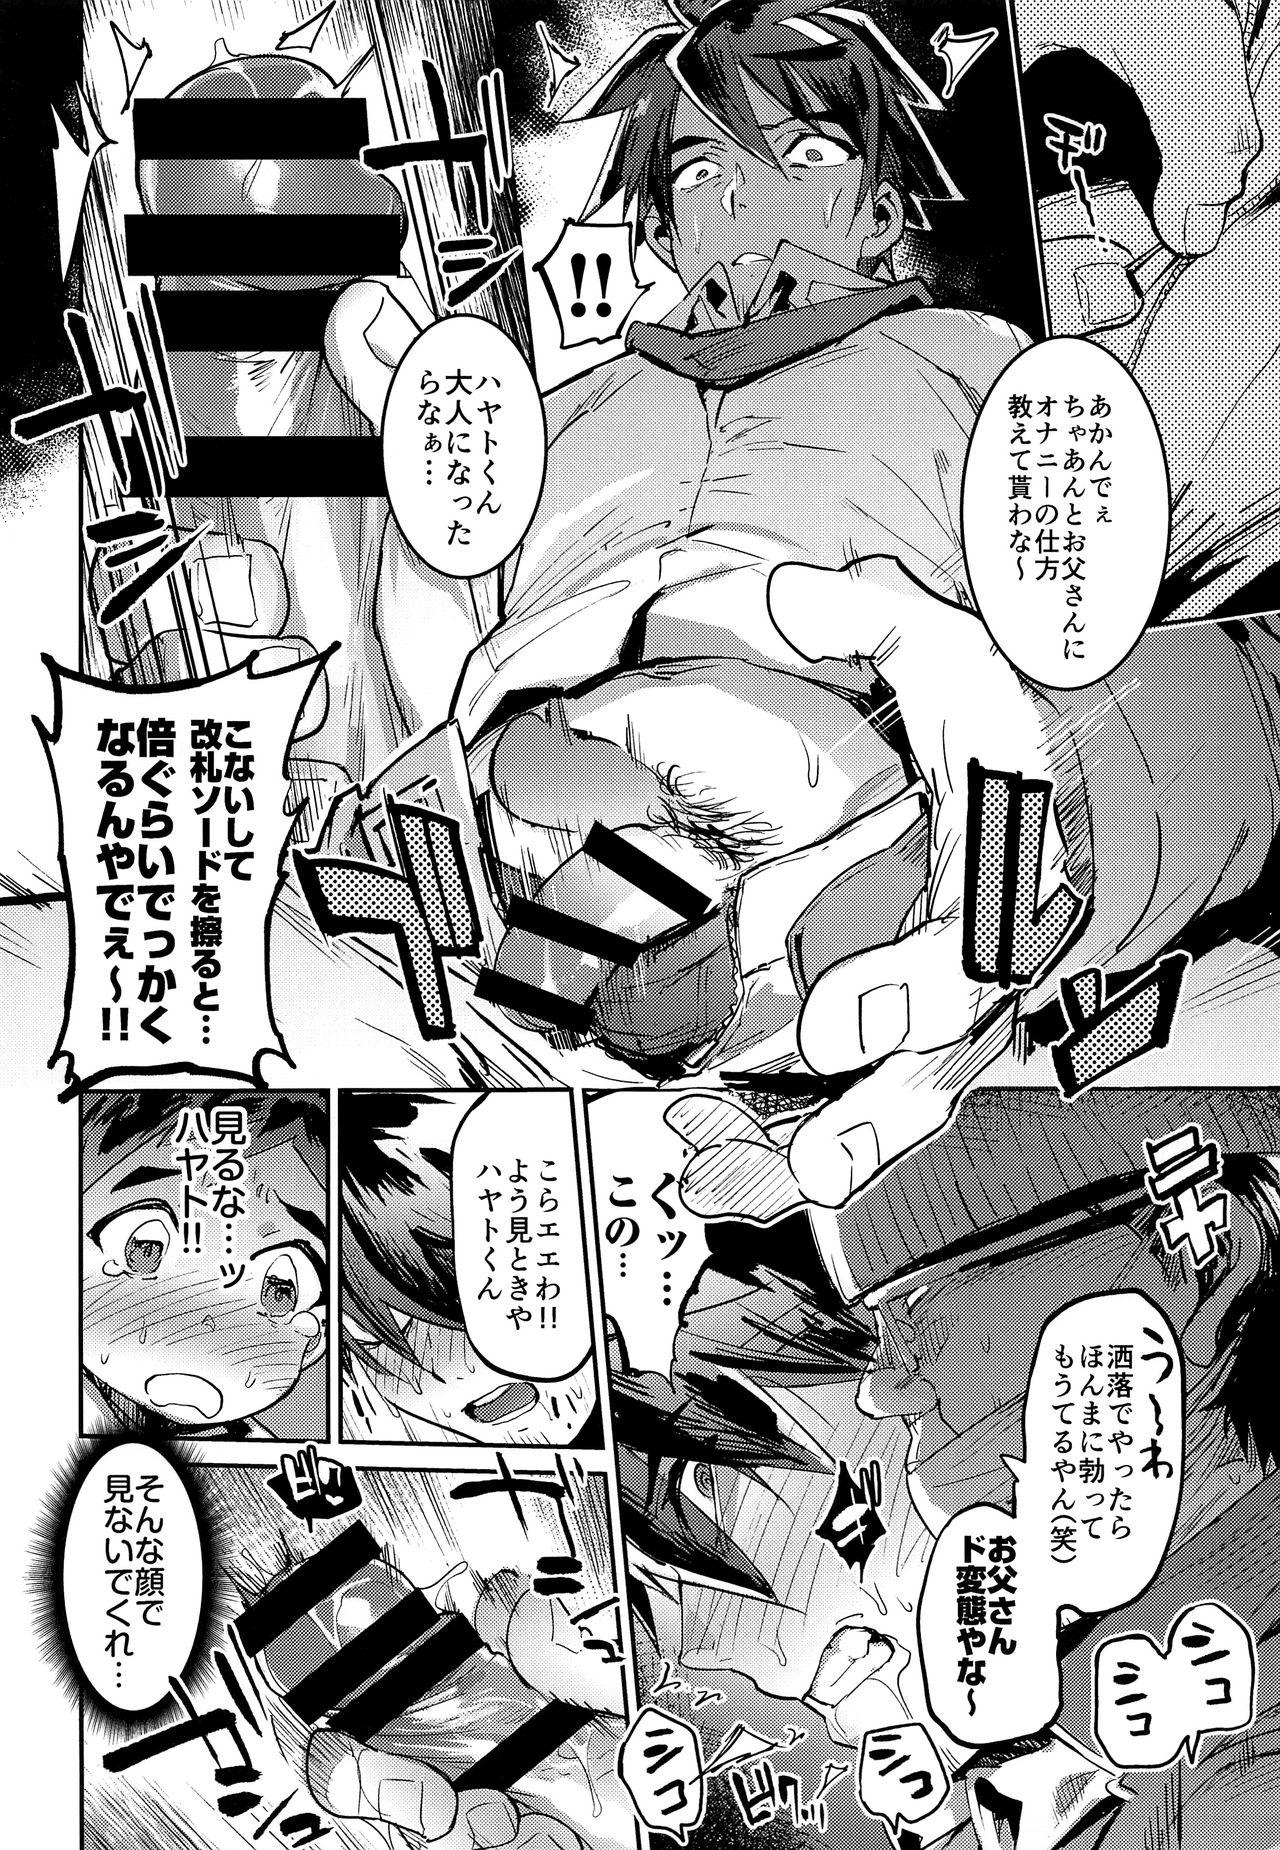 Slut Hayasugiru Oyako - Shinkansen henkei robo shinkalion 18 Year Old - Page 9